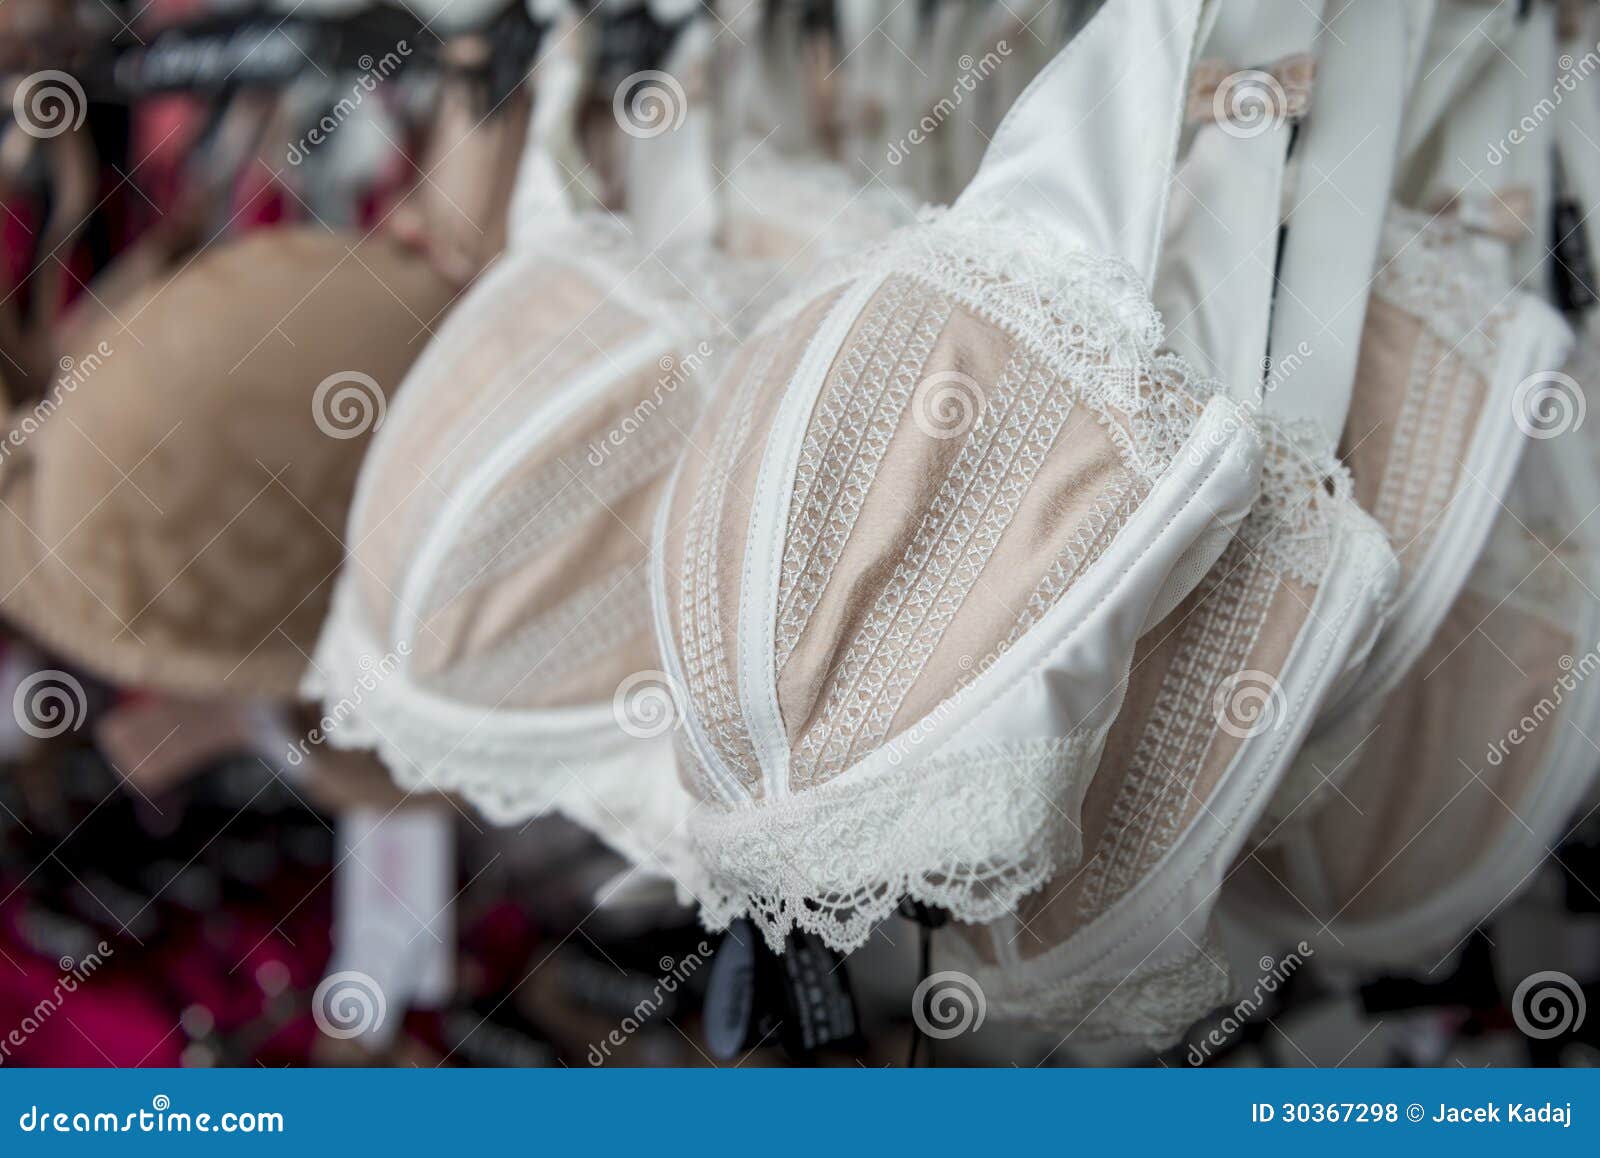 Old fashioned bra stock photo. Image of background, seduction